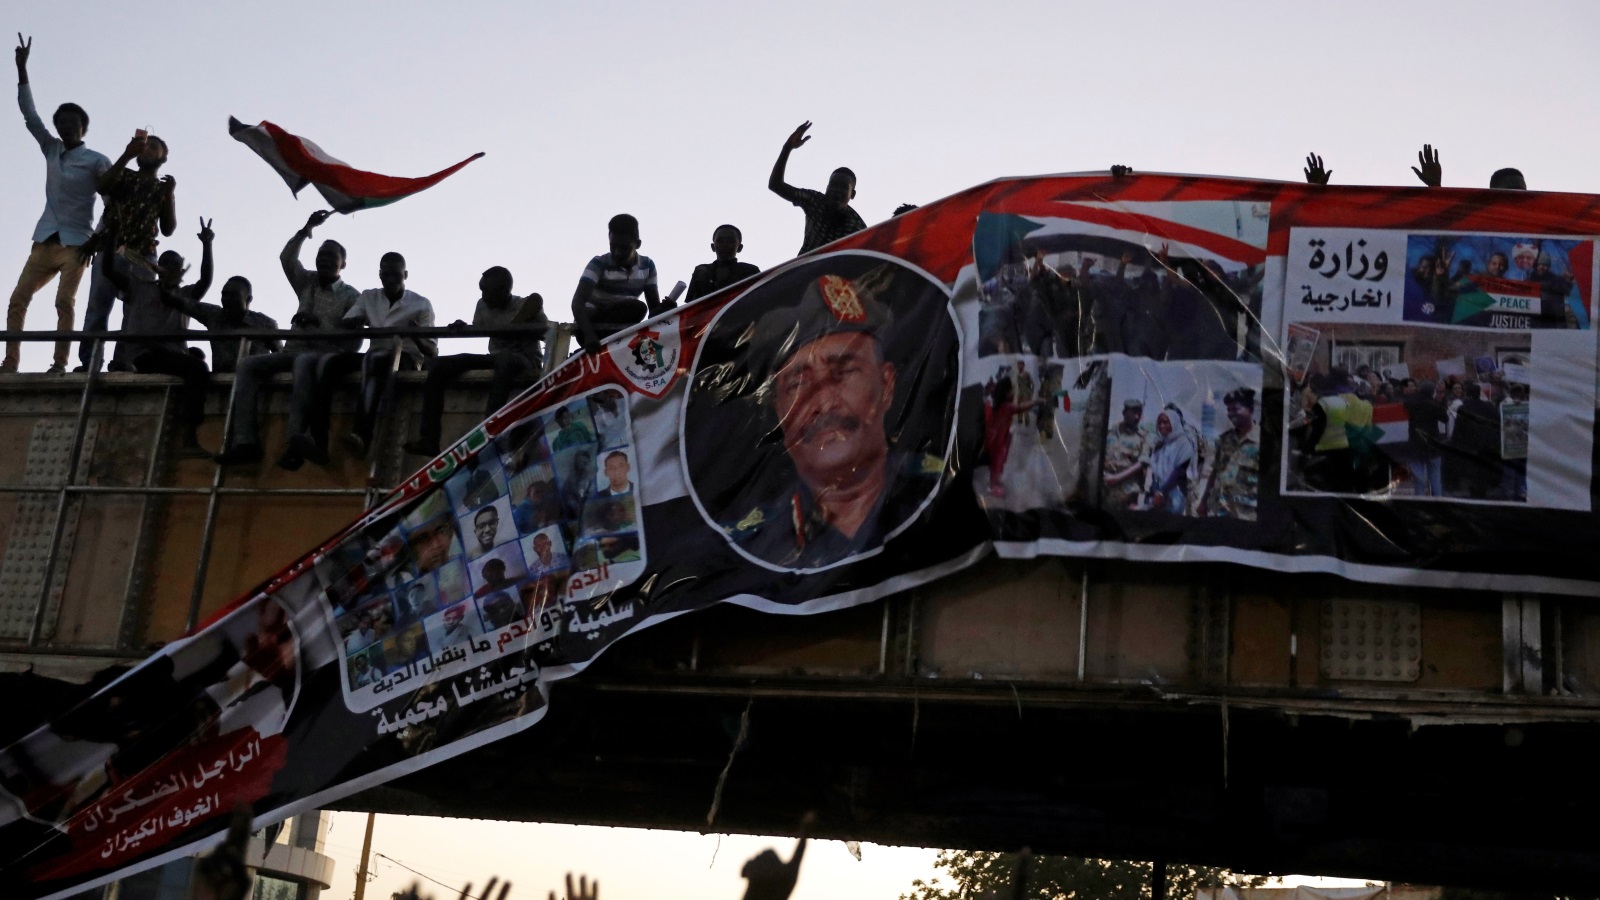 ‪متظاهرون ينزعون لافتة لرئيس المجلس العسكري الانتقالي من على جسر في العاصمة السودانية‬ (رويترز)